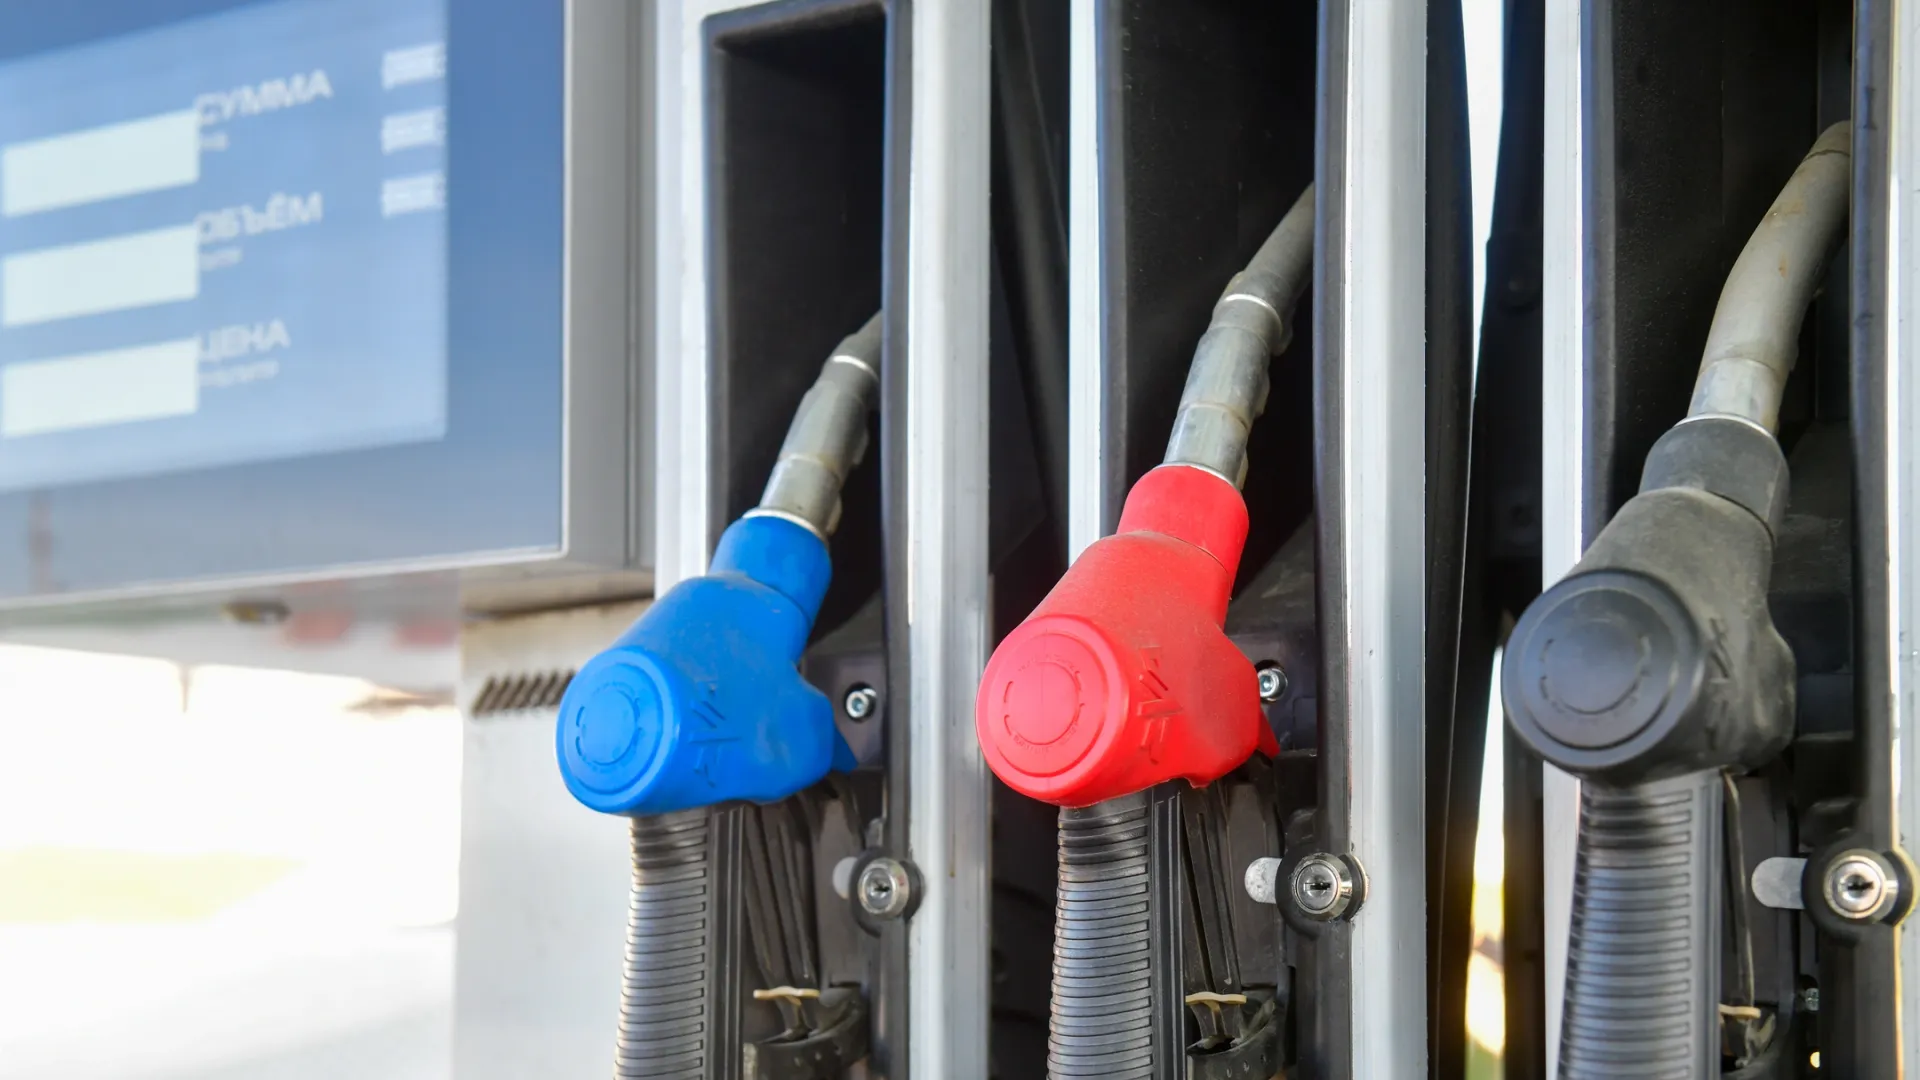 ЯНАО вошел в топ-3 рейтинга доступности бензина, несмотря на существенный скачок цен на топливо. Фото: Андрей Ткачёв / «Ямал-Медиа»